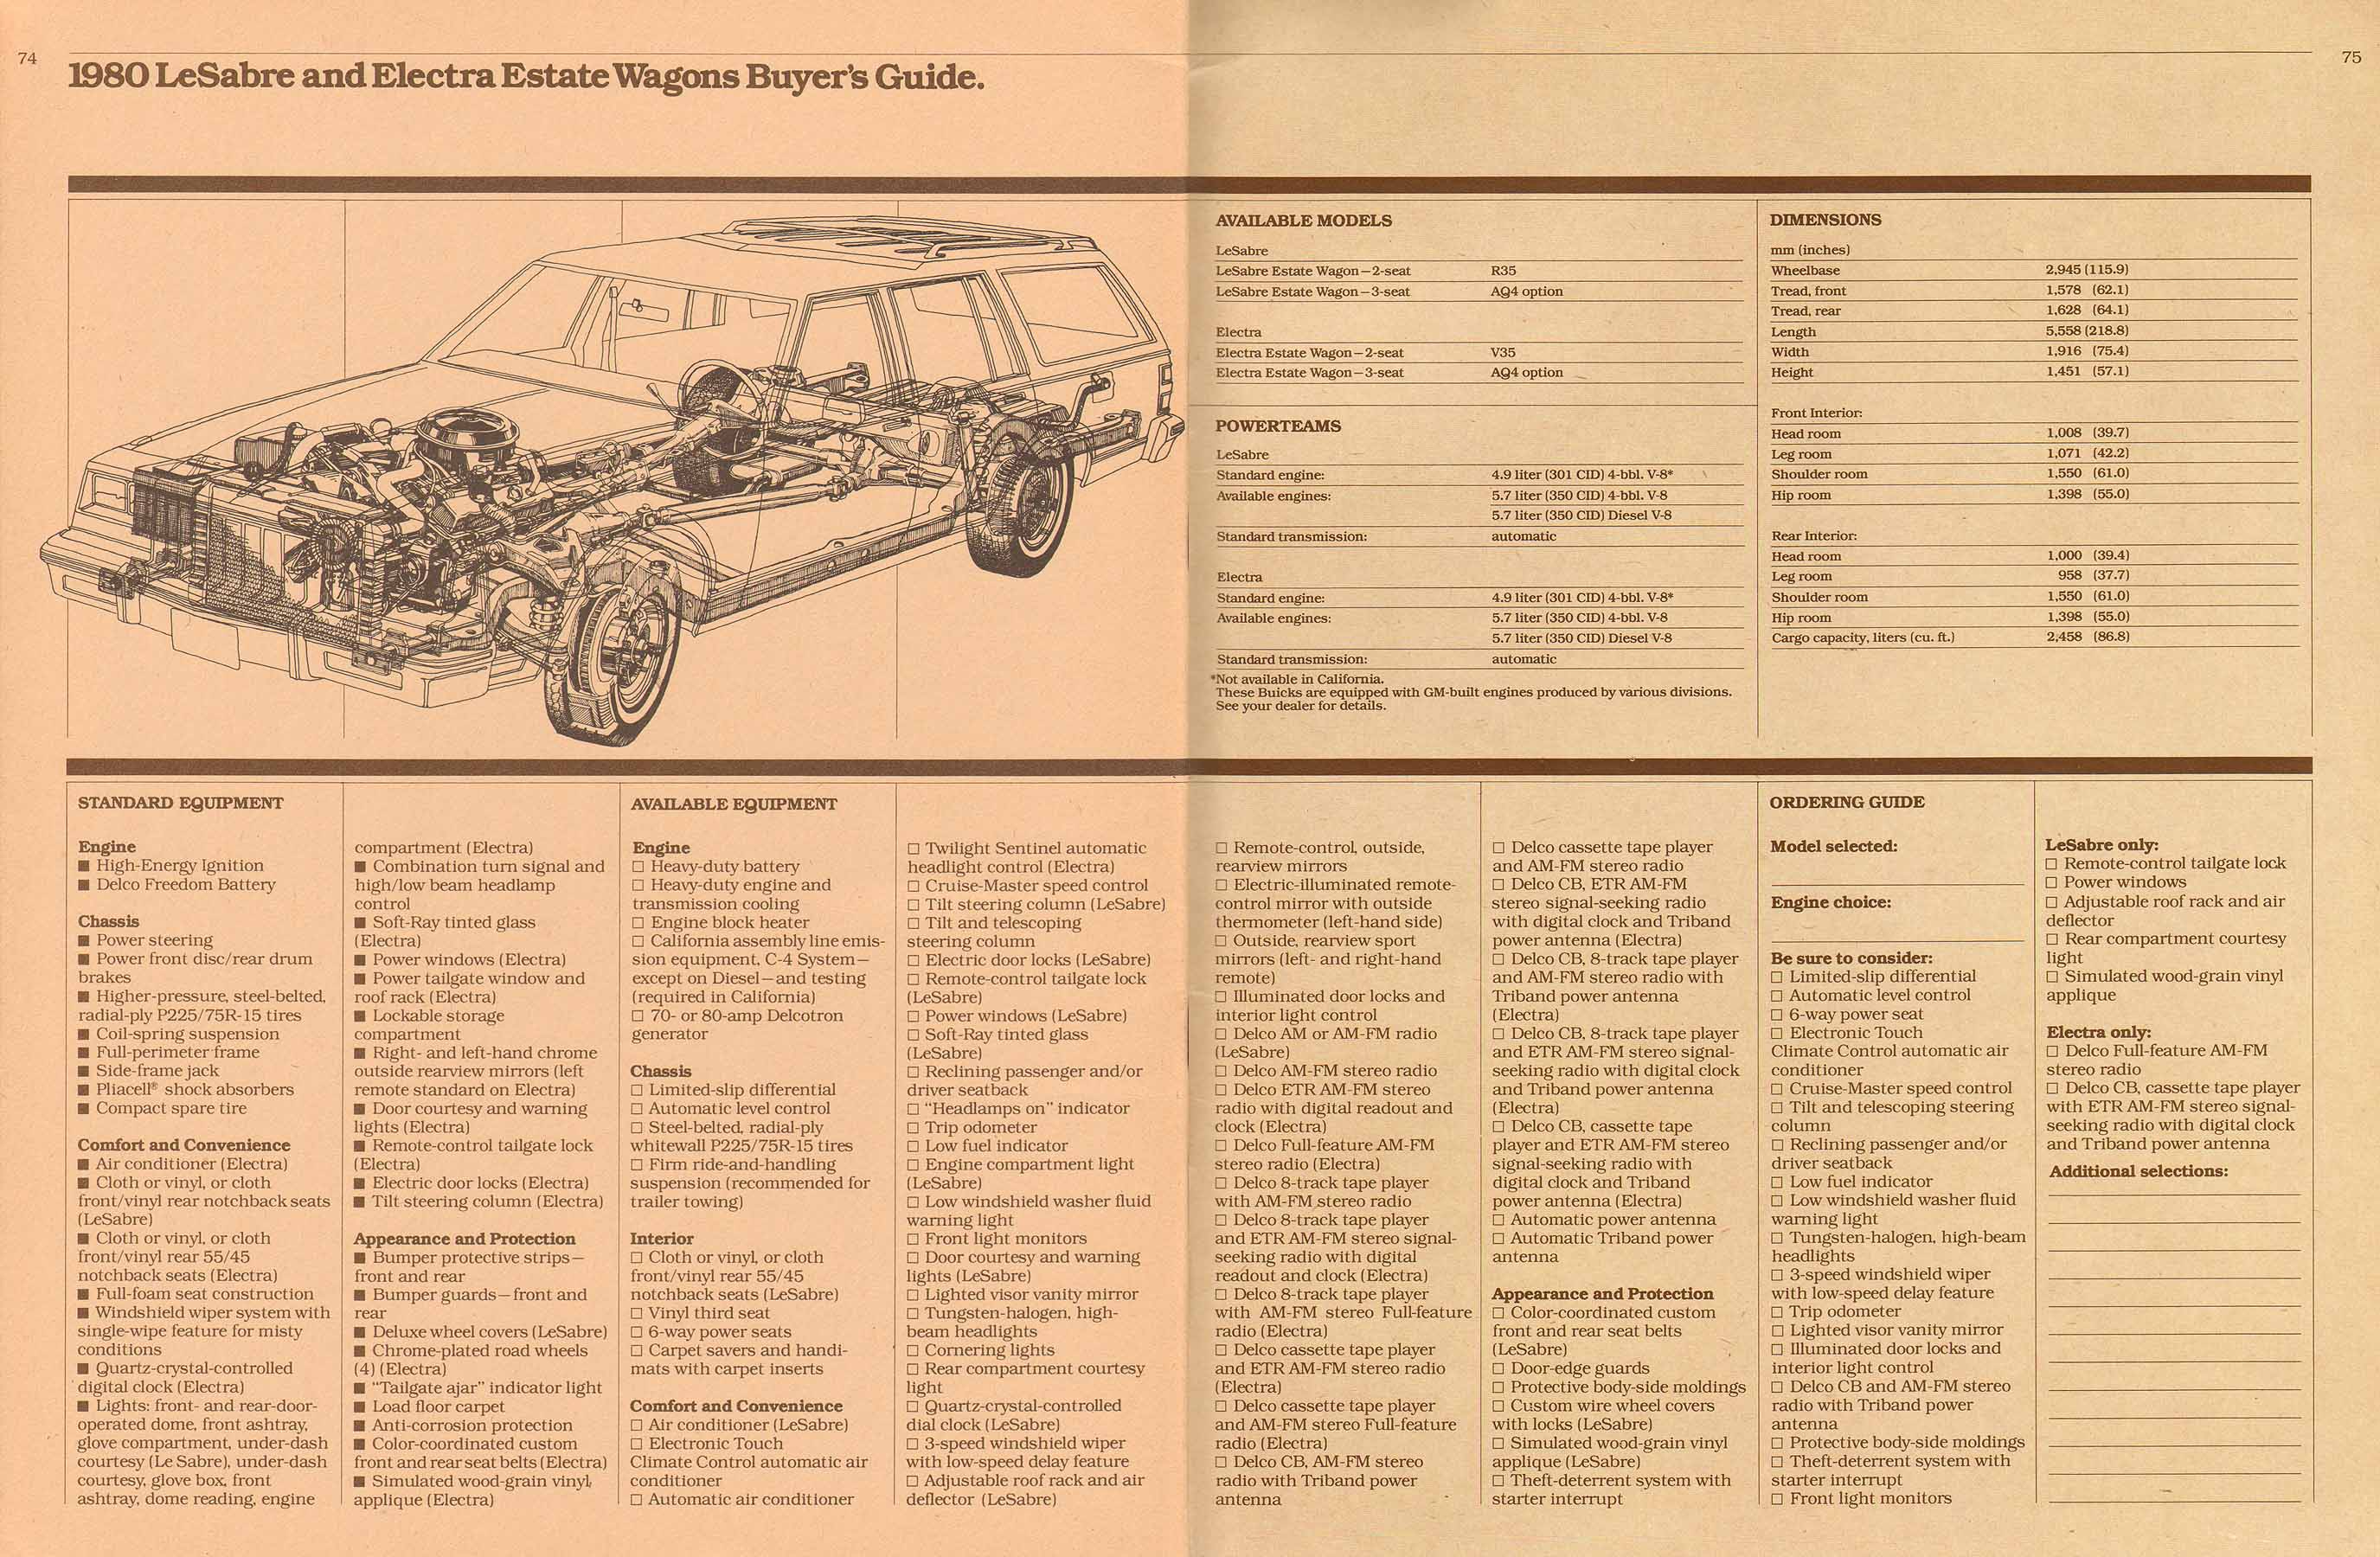 1980 Buick Full Line Prestige-74-75